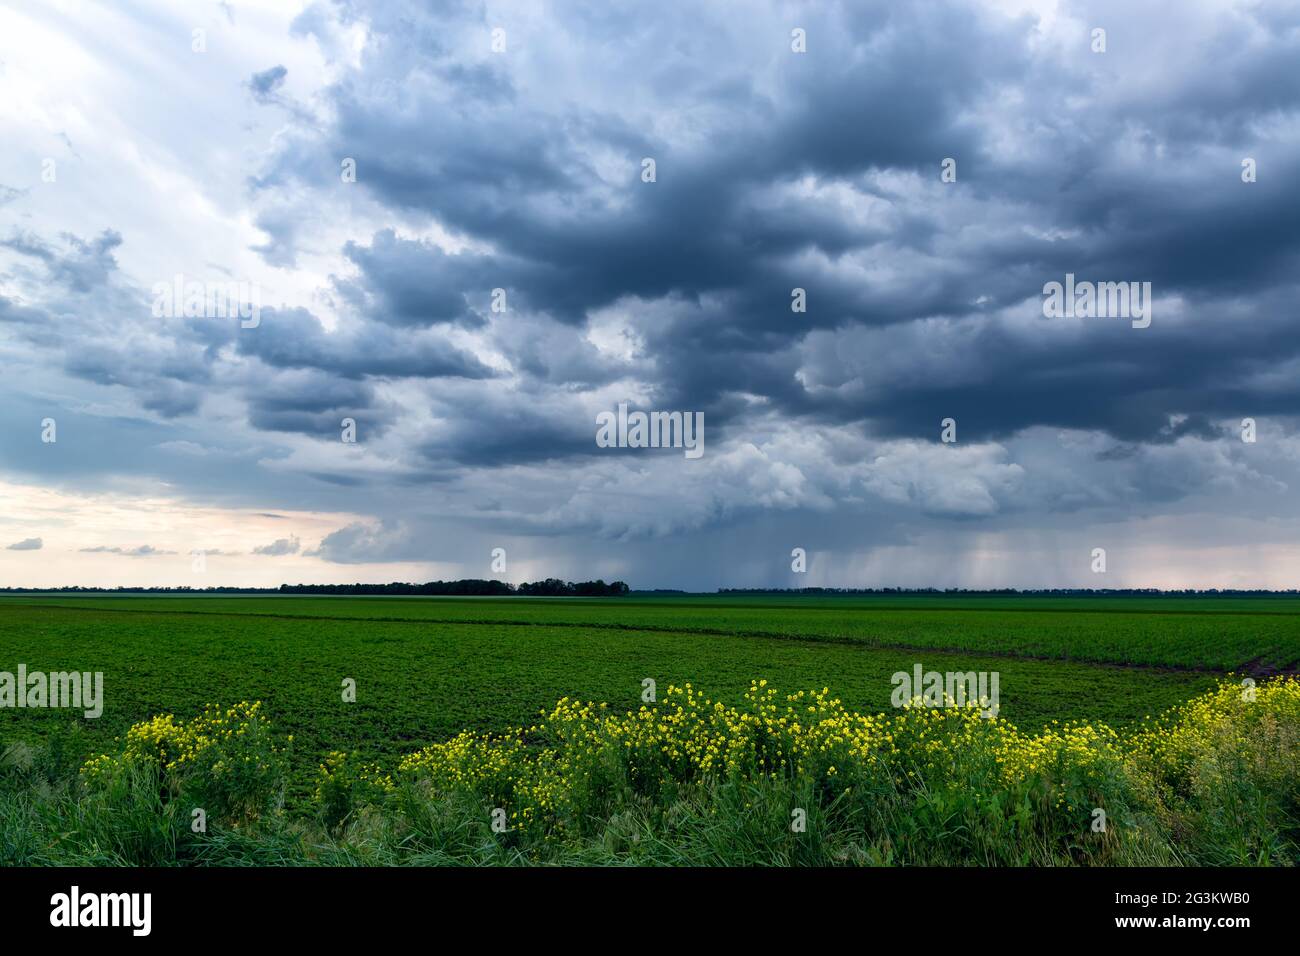 Cielo drammatico e tempestoso con forti piogge all'orizzonte. Splendido paesaggio rurale. Foto Stock